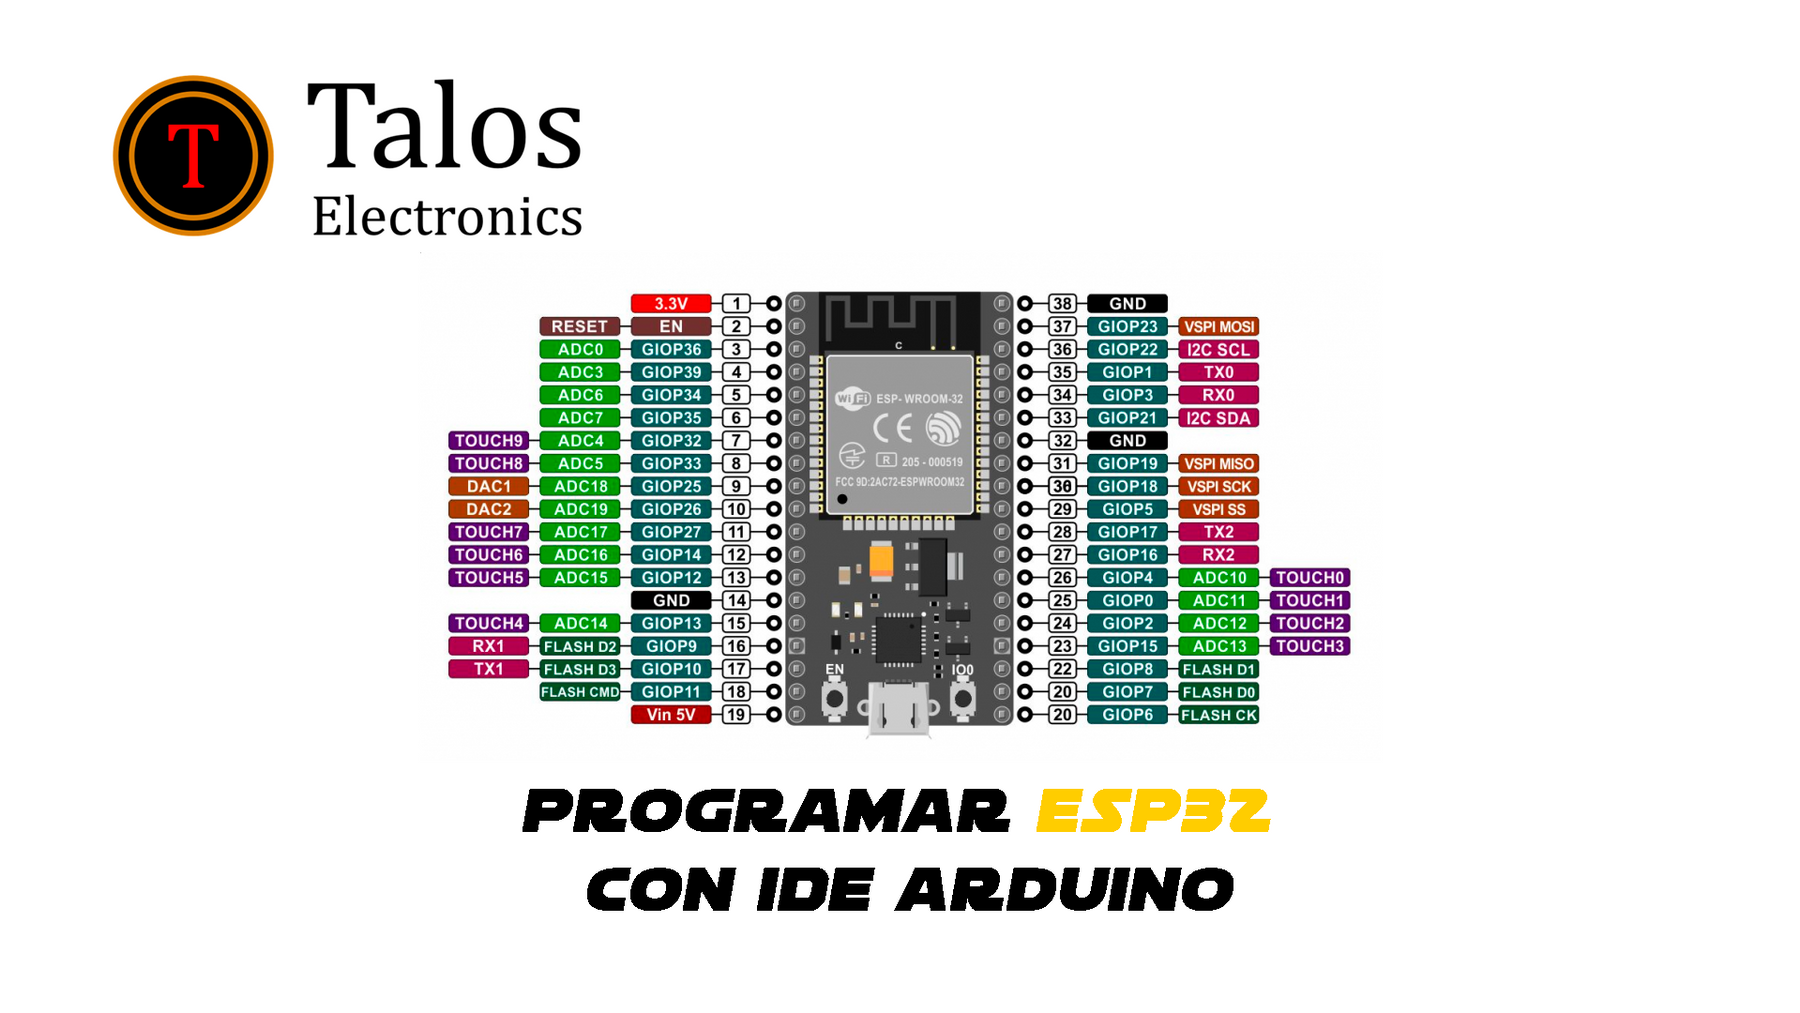 Programar ESP32 con IDE arduino